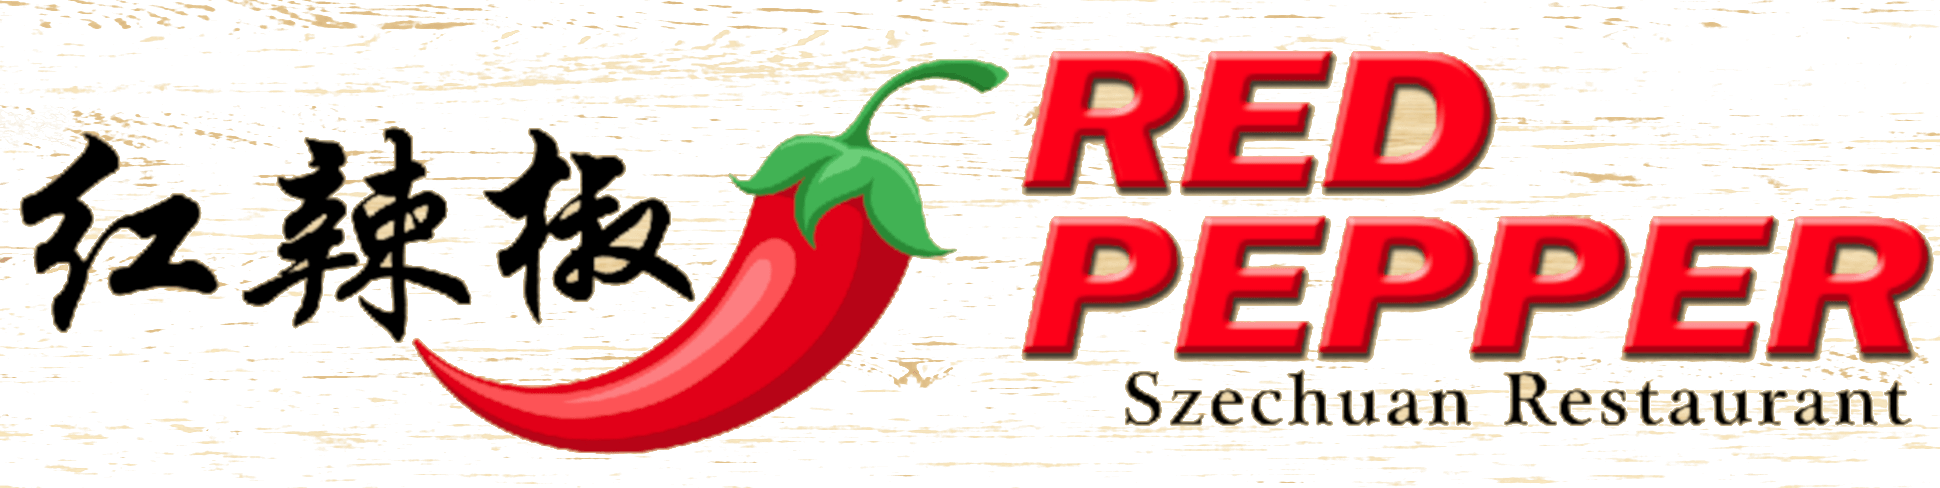 Red Chili Pepper Restaurant Logo - Red Pepper – Szechuan Restaurant